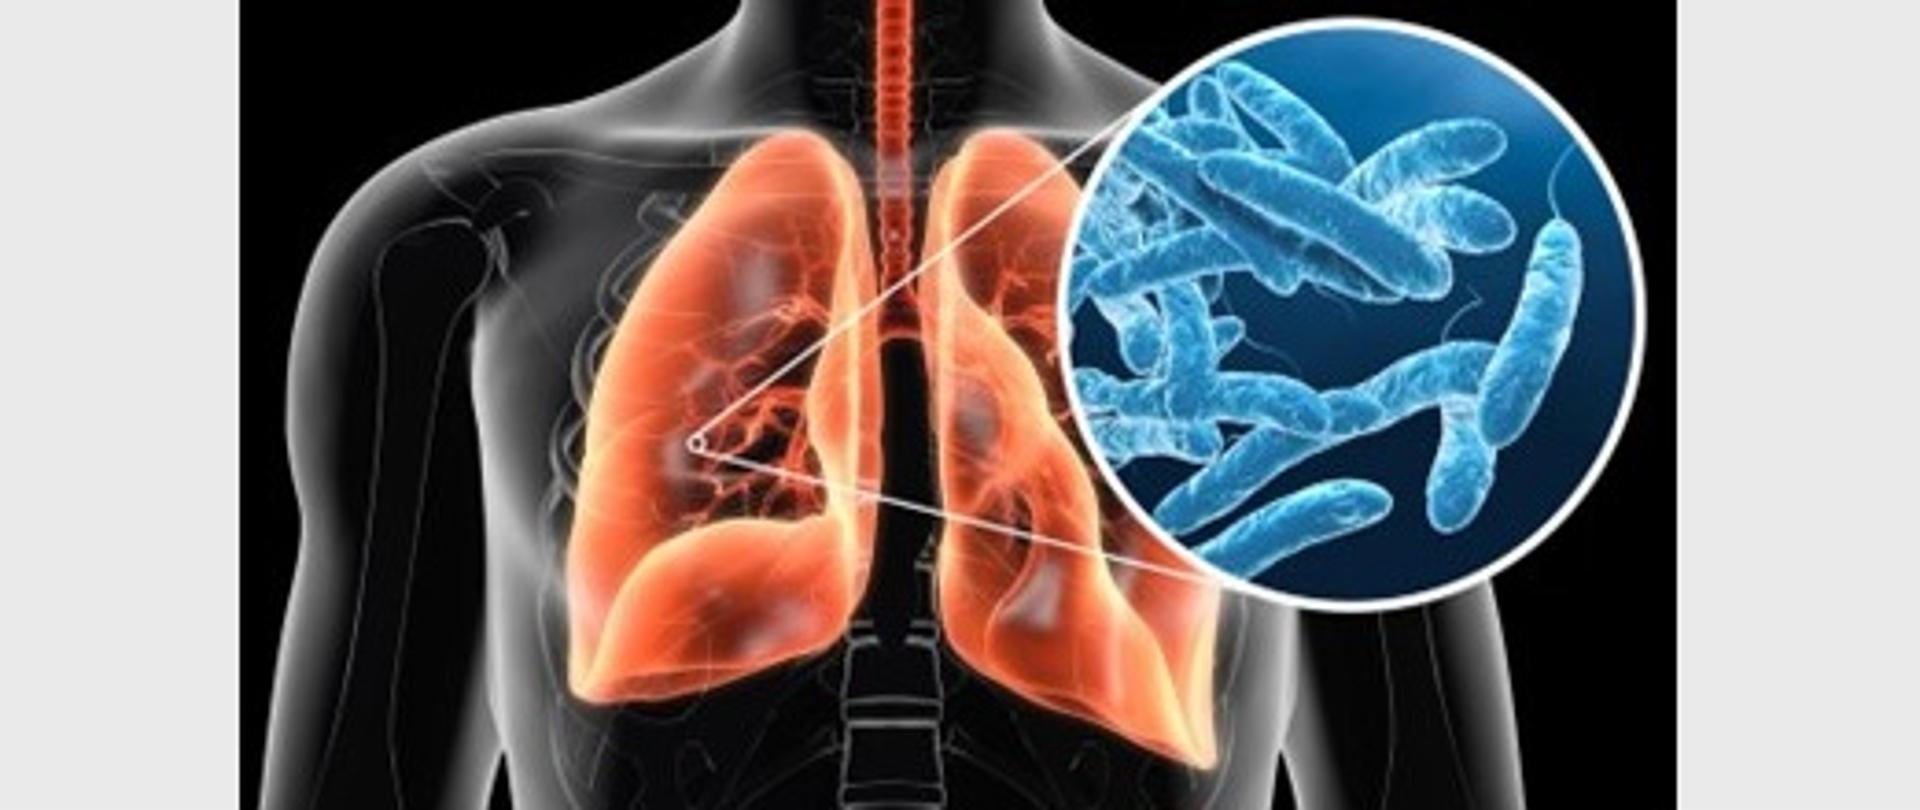 Obrazek przedstawia prześwietlenie klatki piersiowej człowieka , zaznaczono na pomarańczowo płuca , zaznaczono punkt na płucach po lewej stronie od niego prowadza dwie linie symbolizujace powiekszenie tego punktu na którym widać pałeczki bakterii